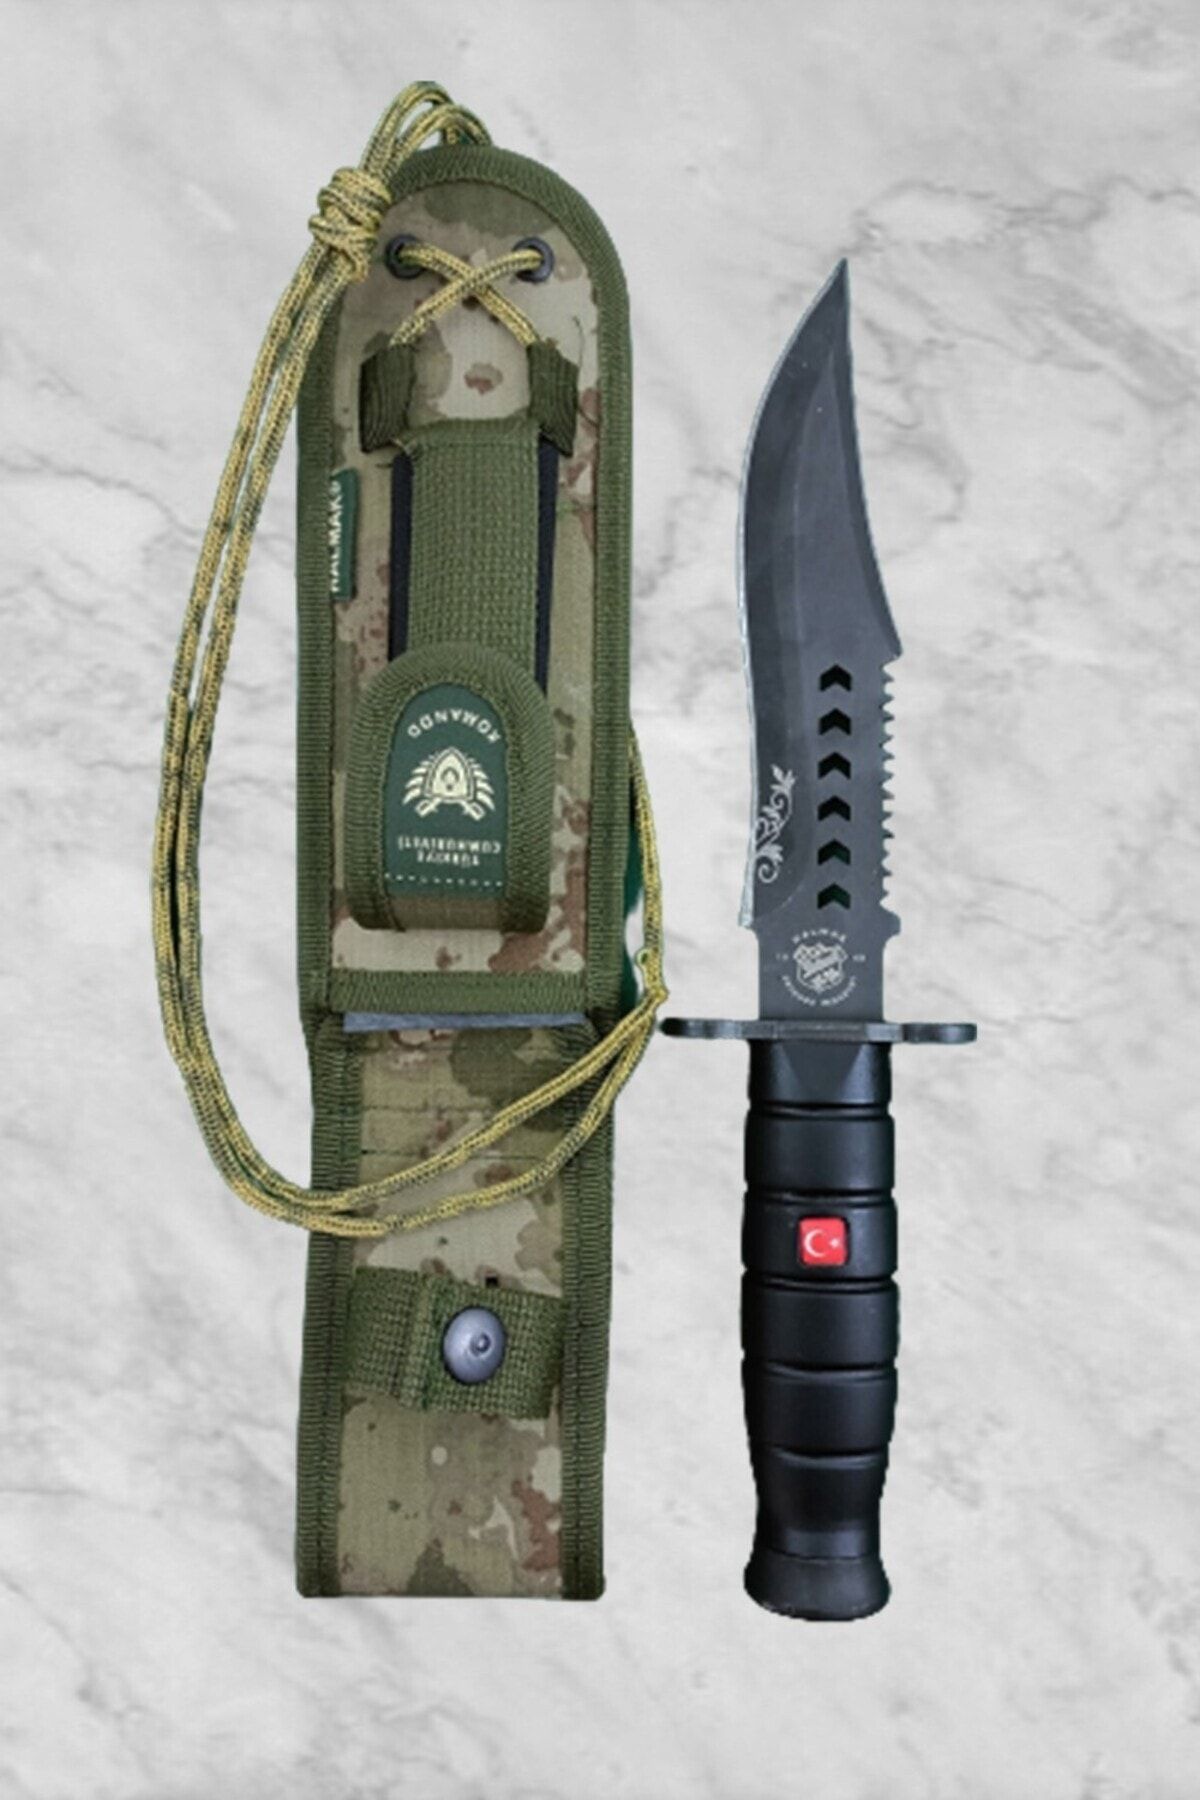 Halmak Outdoor Bıçak Mutfak Bıçak Komando Rambo Kamp Av Bıçak Çakı Kılıflı (30 Cm)